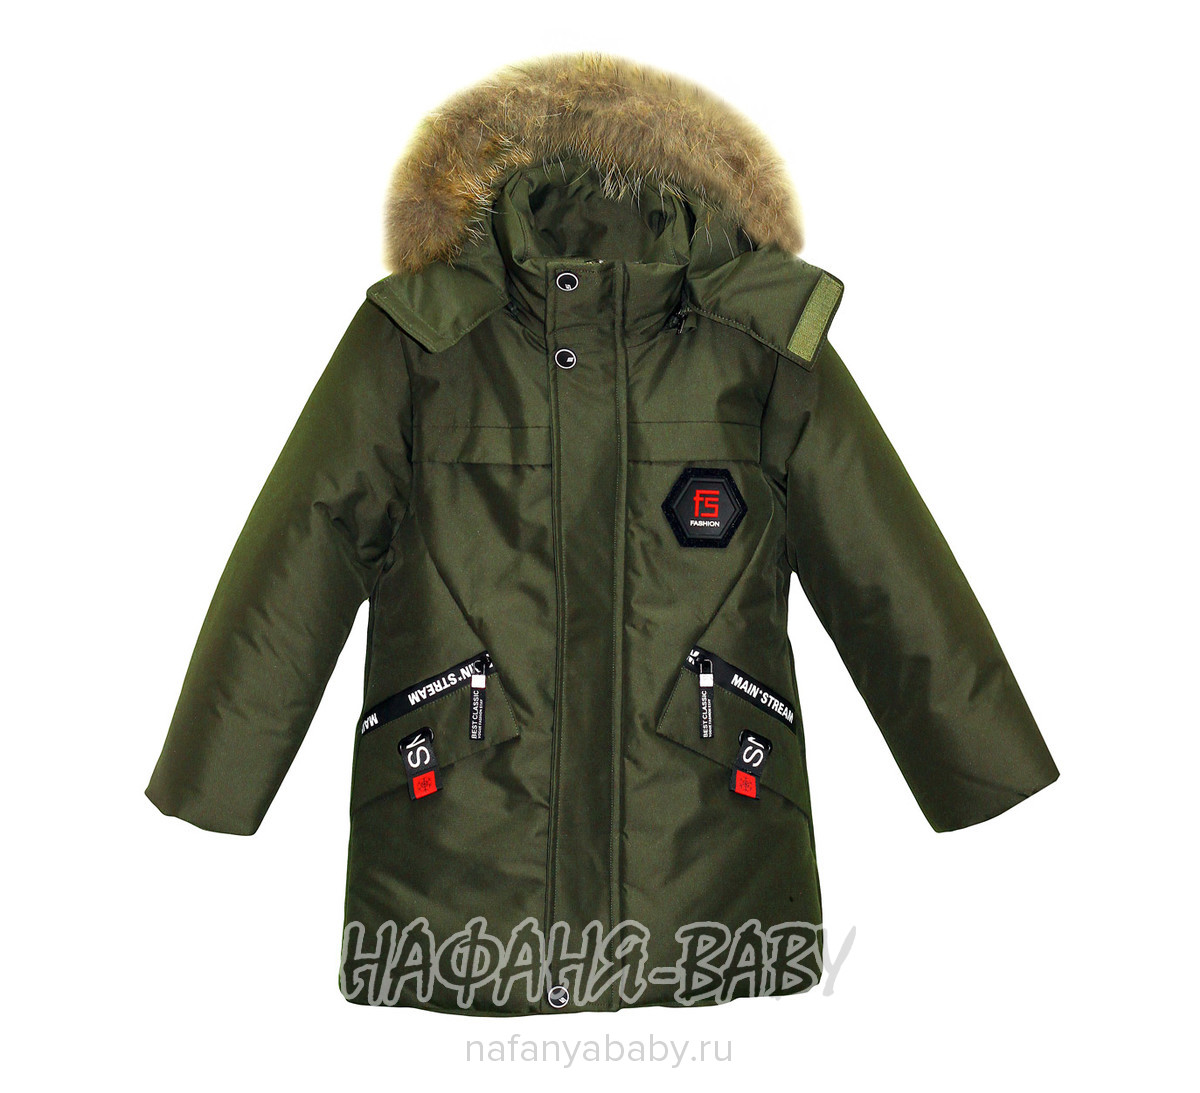 Зимняя куртка с подкладом флис MINIKA арт: 006, 5-9 лет, 1-4 года, оптом Китай (Пекин)